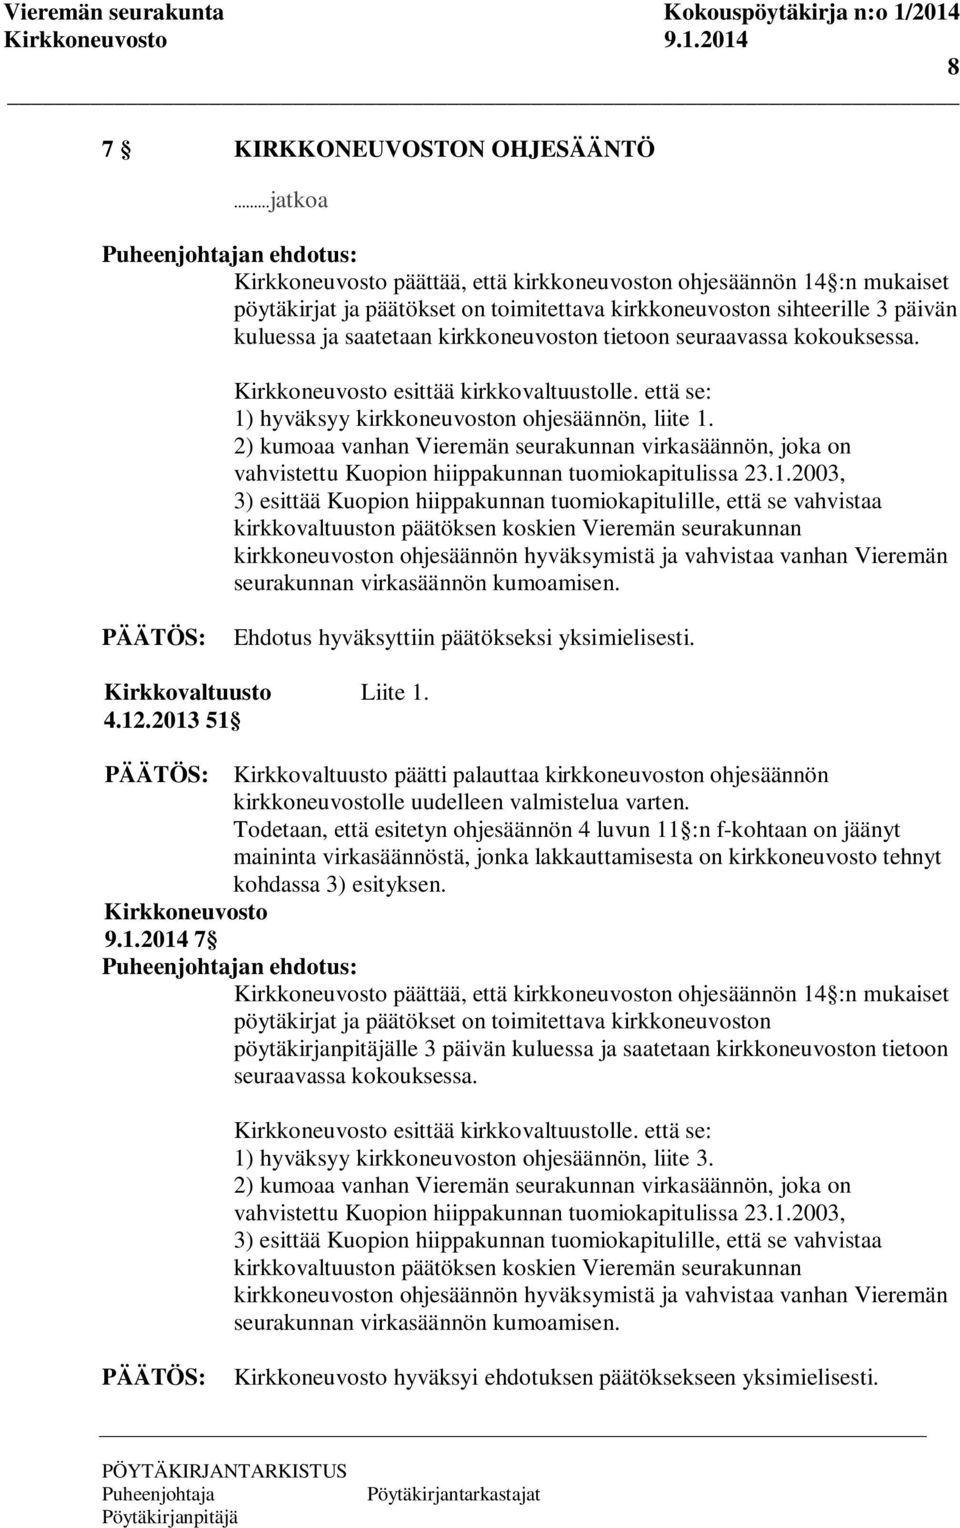 2) kumoaa vanhan Vieremän seurakunnan virkasäännön, joka on vahvistettu Kuopion hiippakunnan tuomiokapitulissa 23.1.